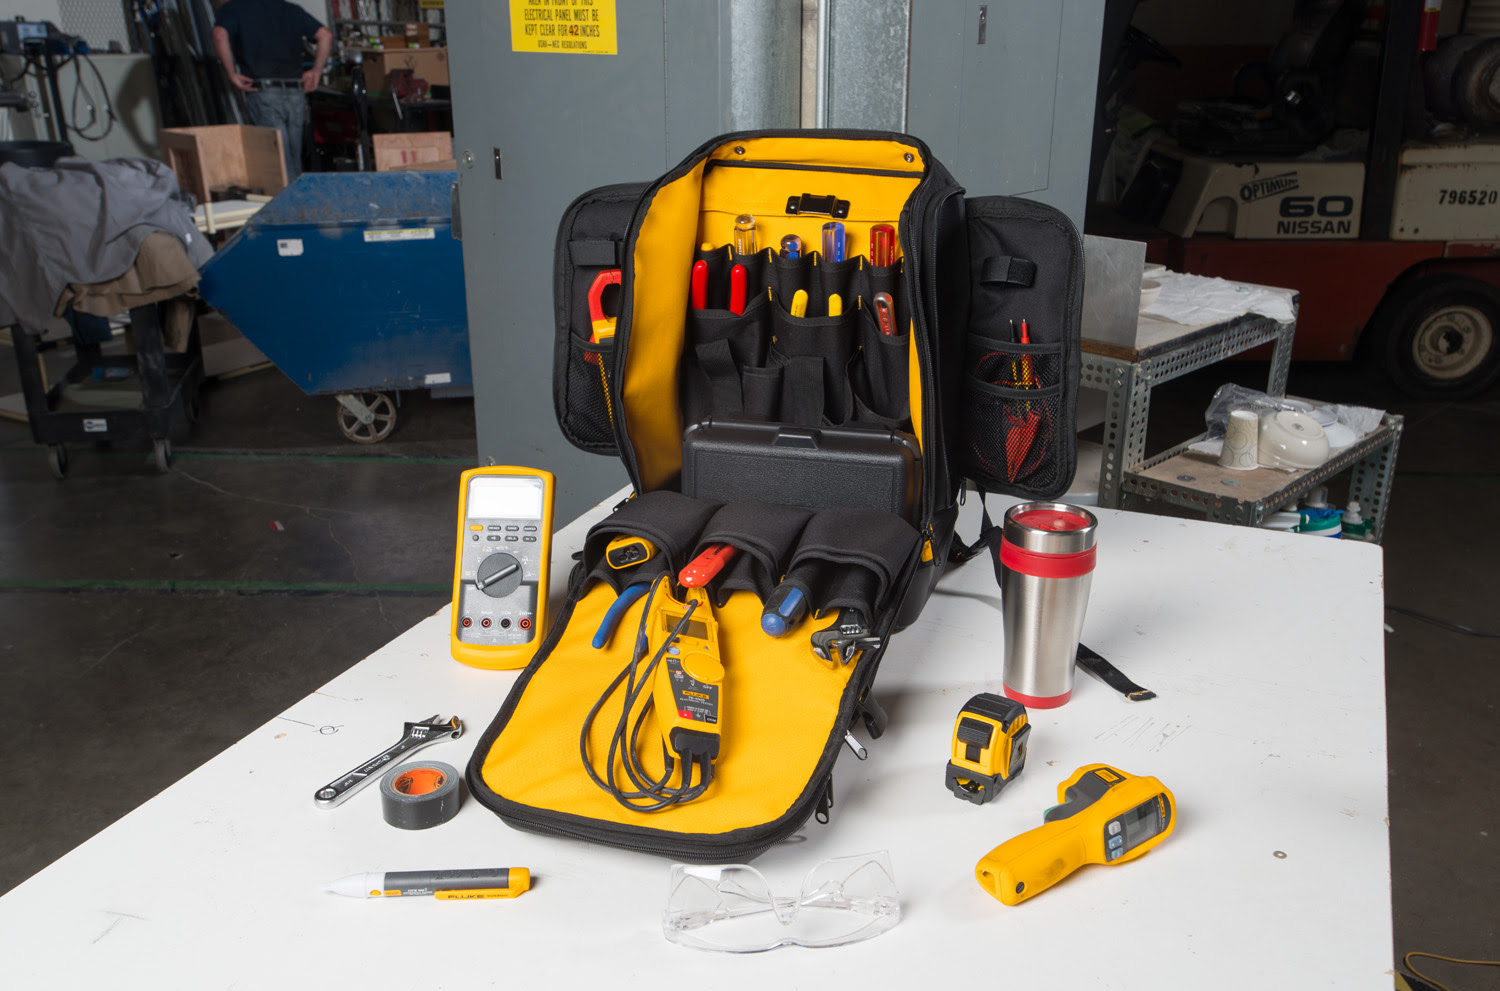 Fluke apresenta mochila para armazenar ferramentas profissionais